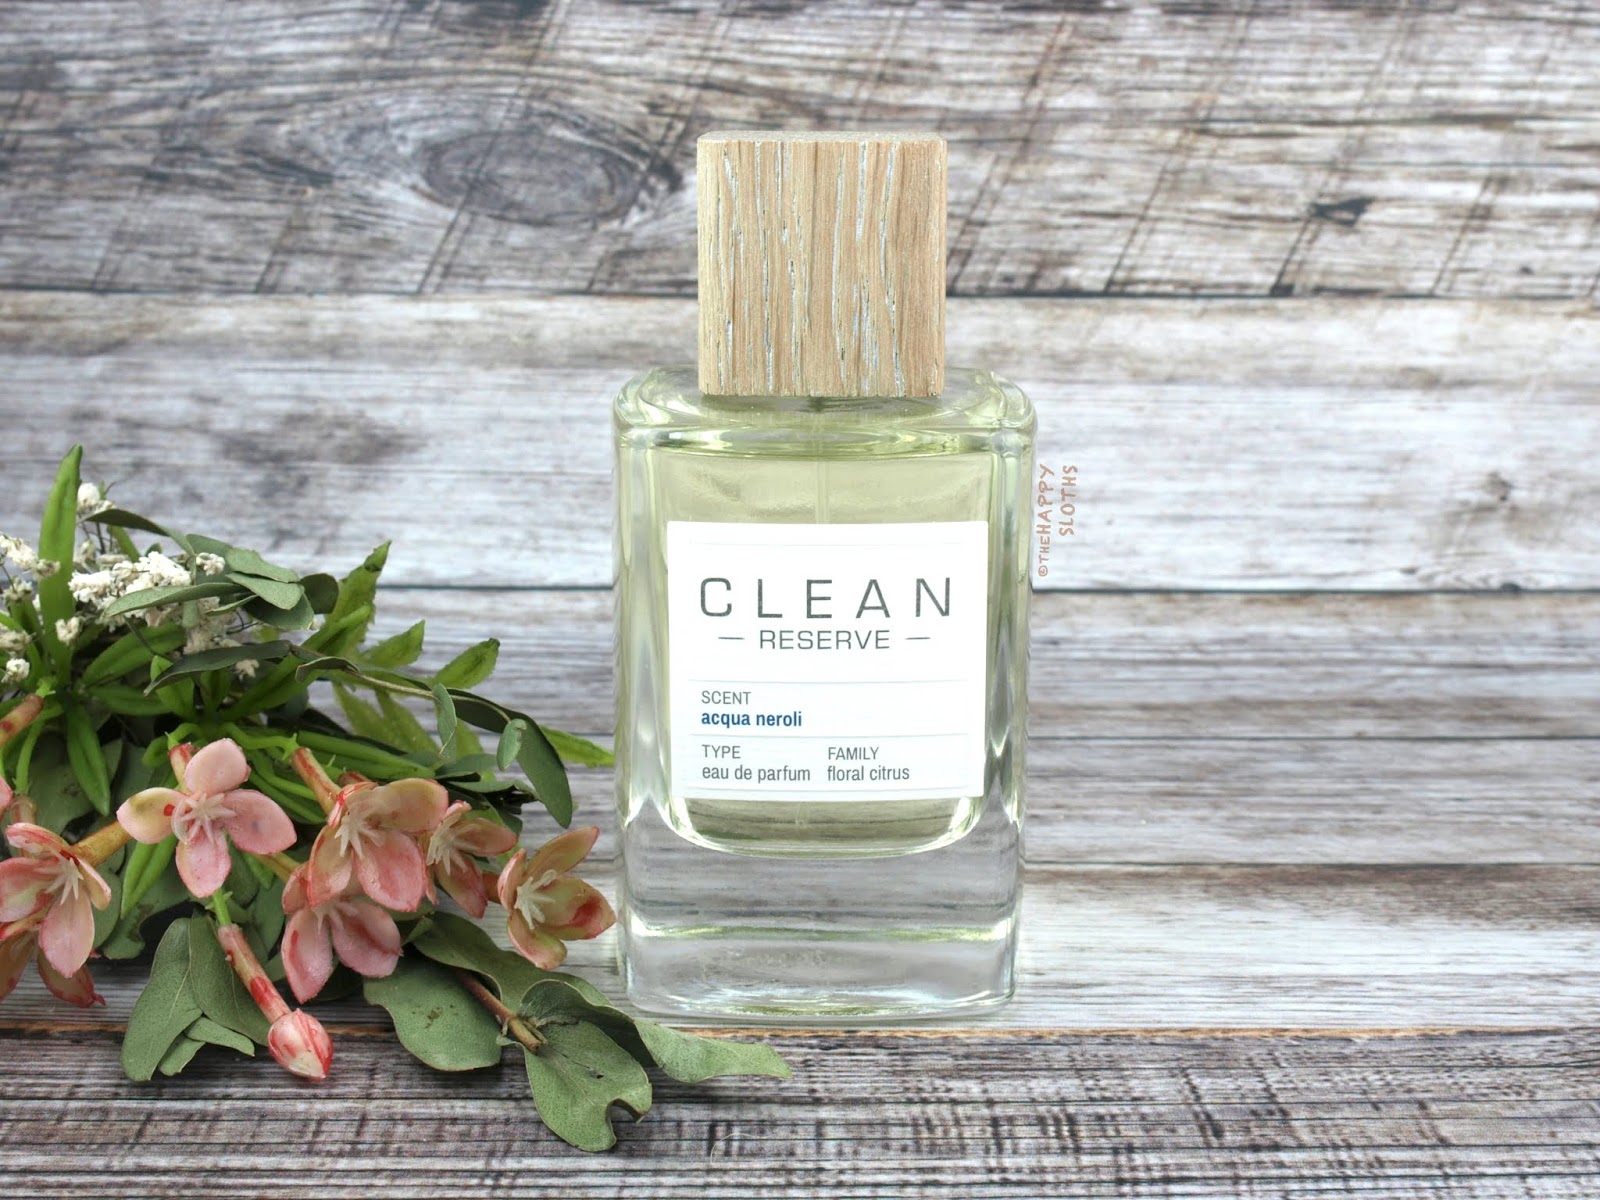 Clean Reserve | Acqua Neroli Eau de Parfum: Review